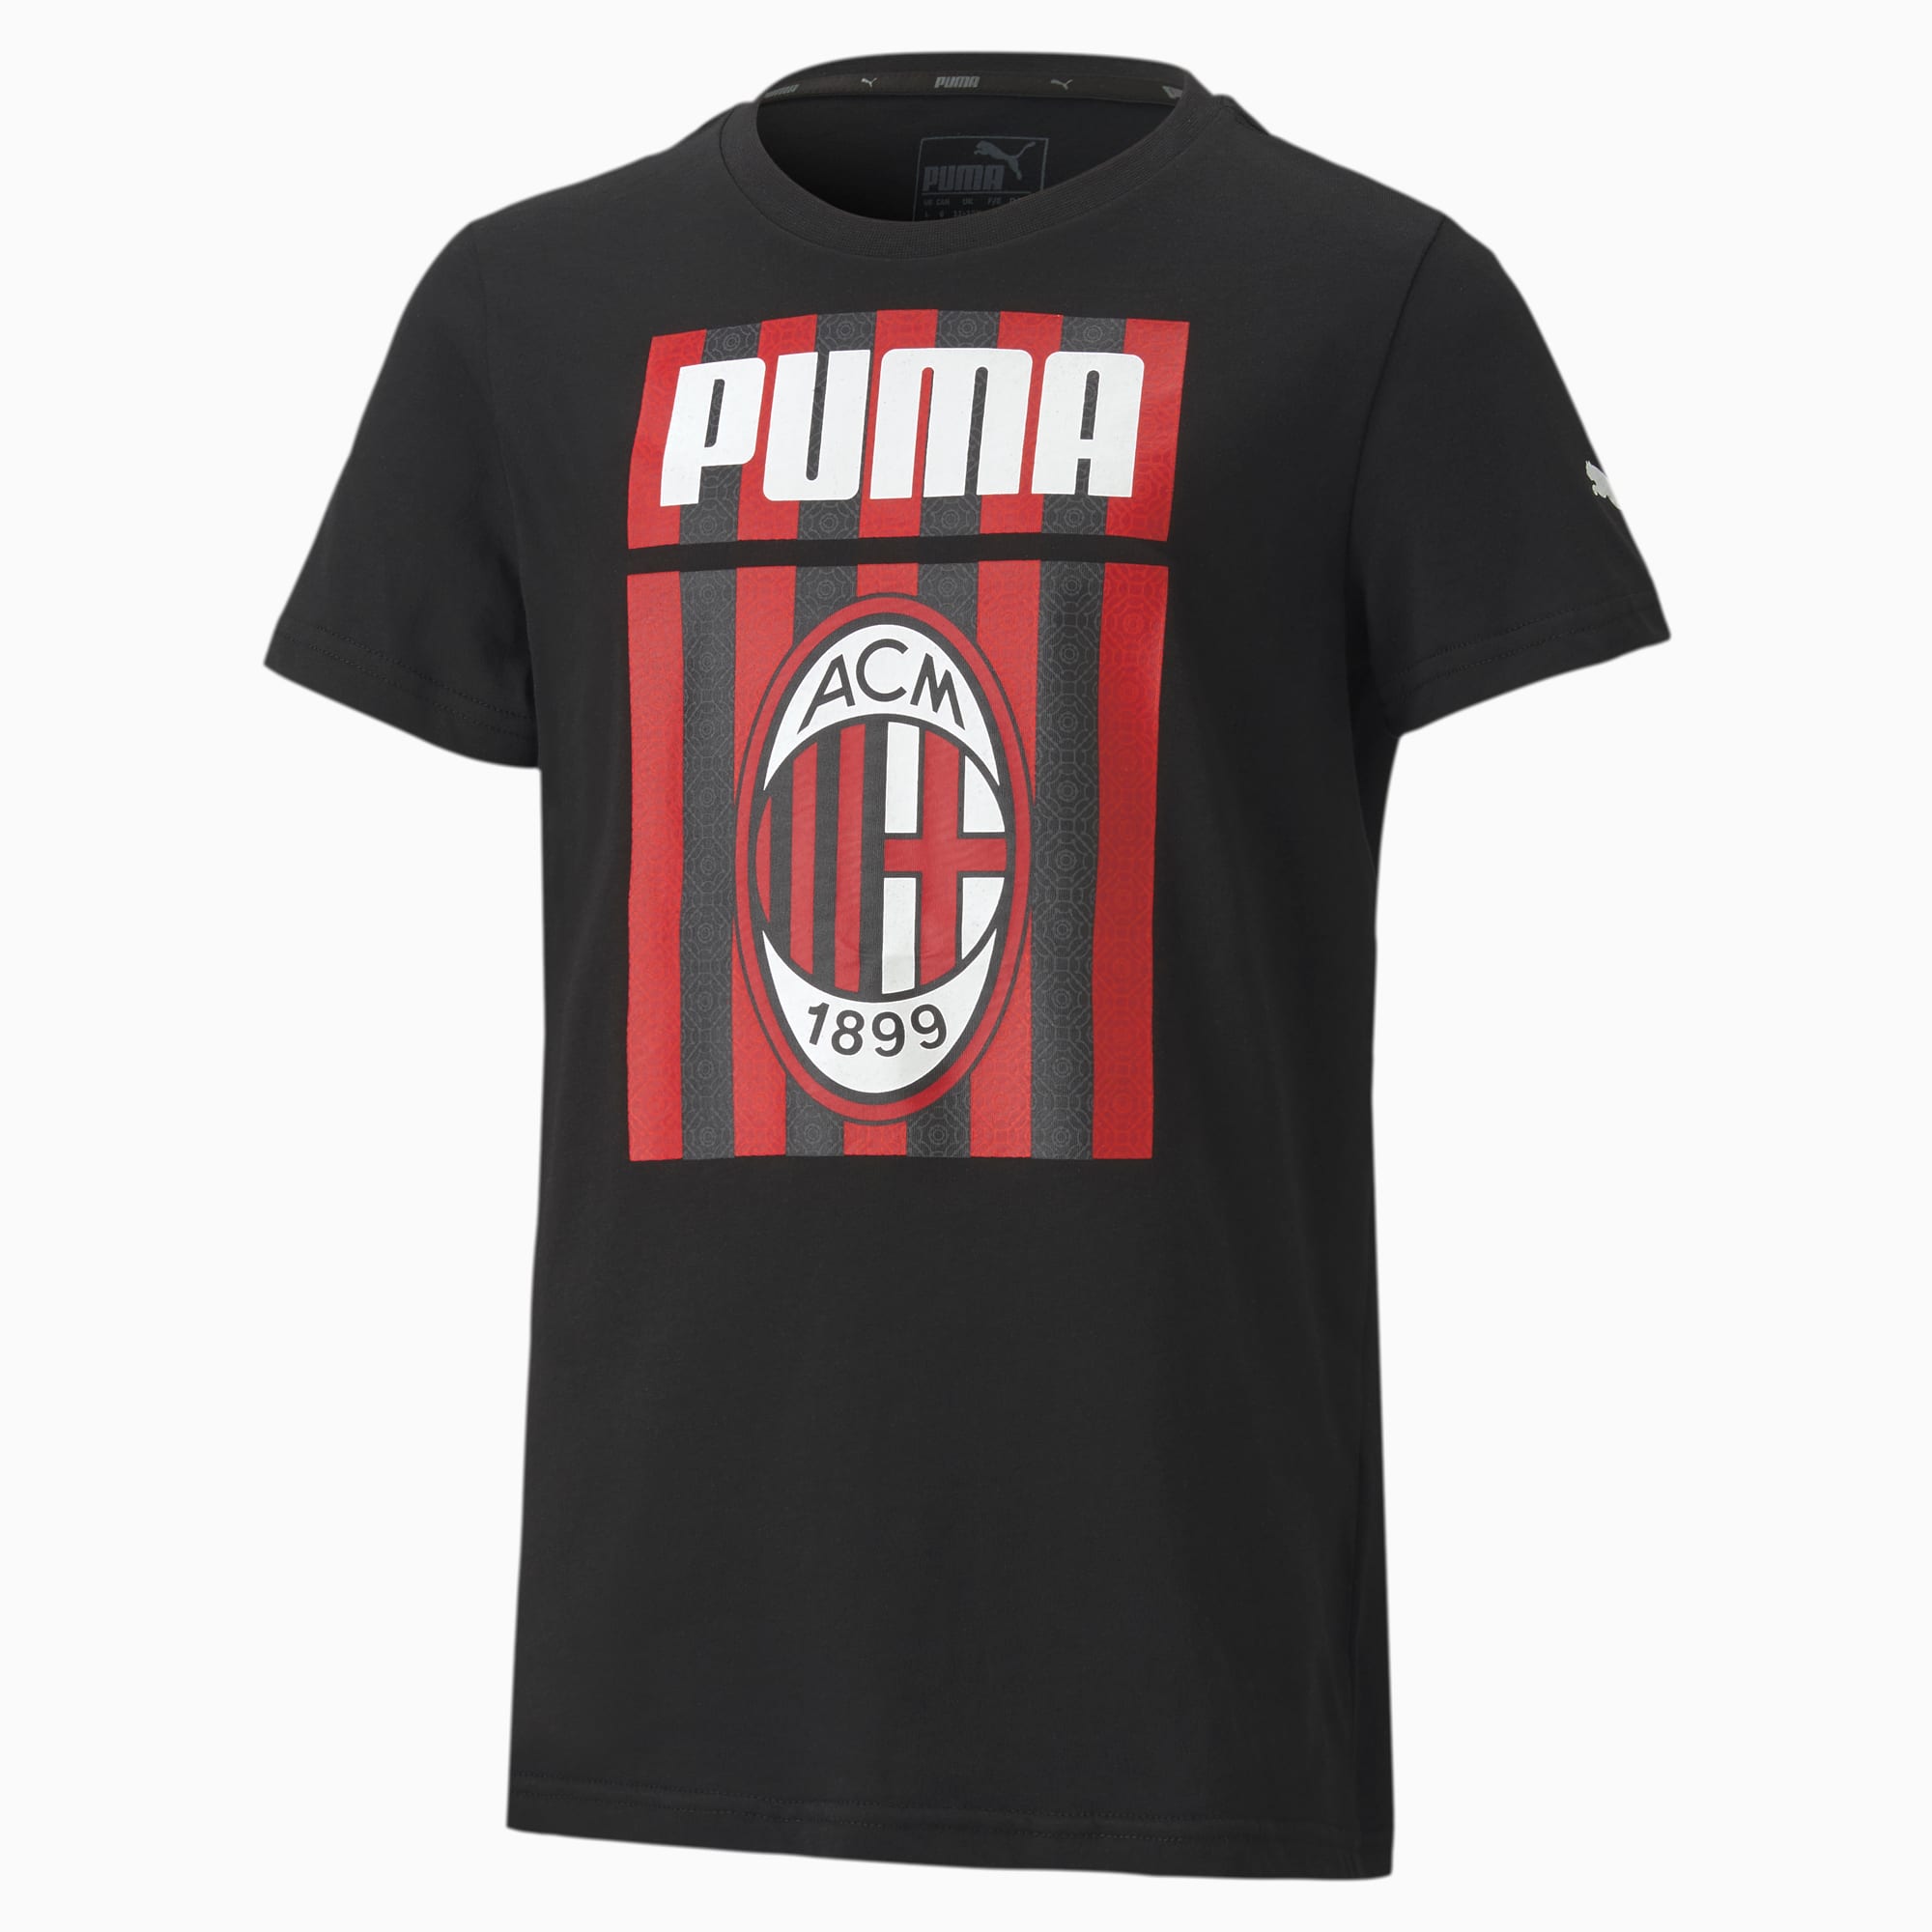 Image of PUMA AC Milan ftblCore Graphic Youth Fußball T-Shirt Für Kinder | Mit Aucun | Schwarz/Rot | Größe: 128